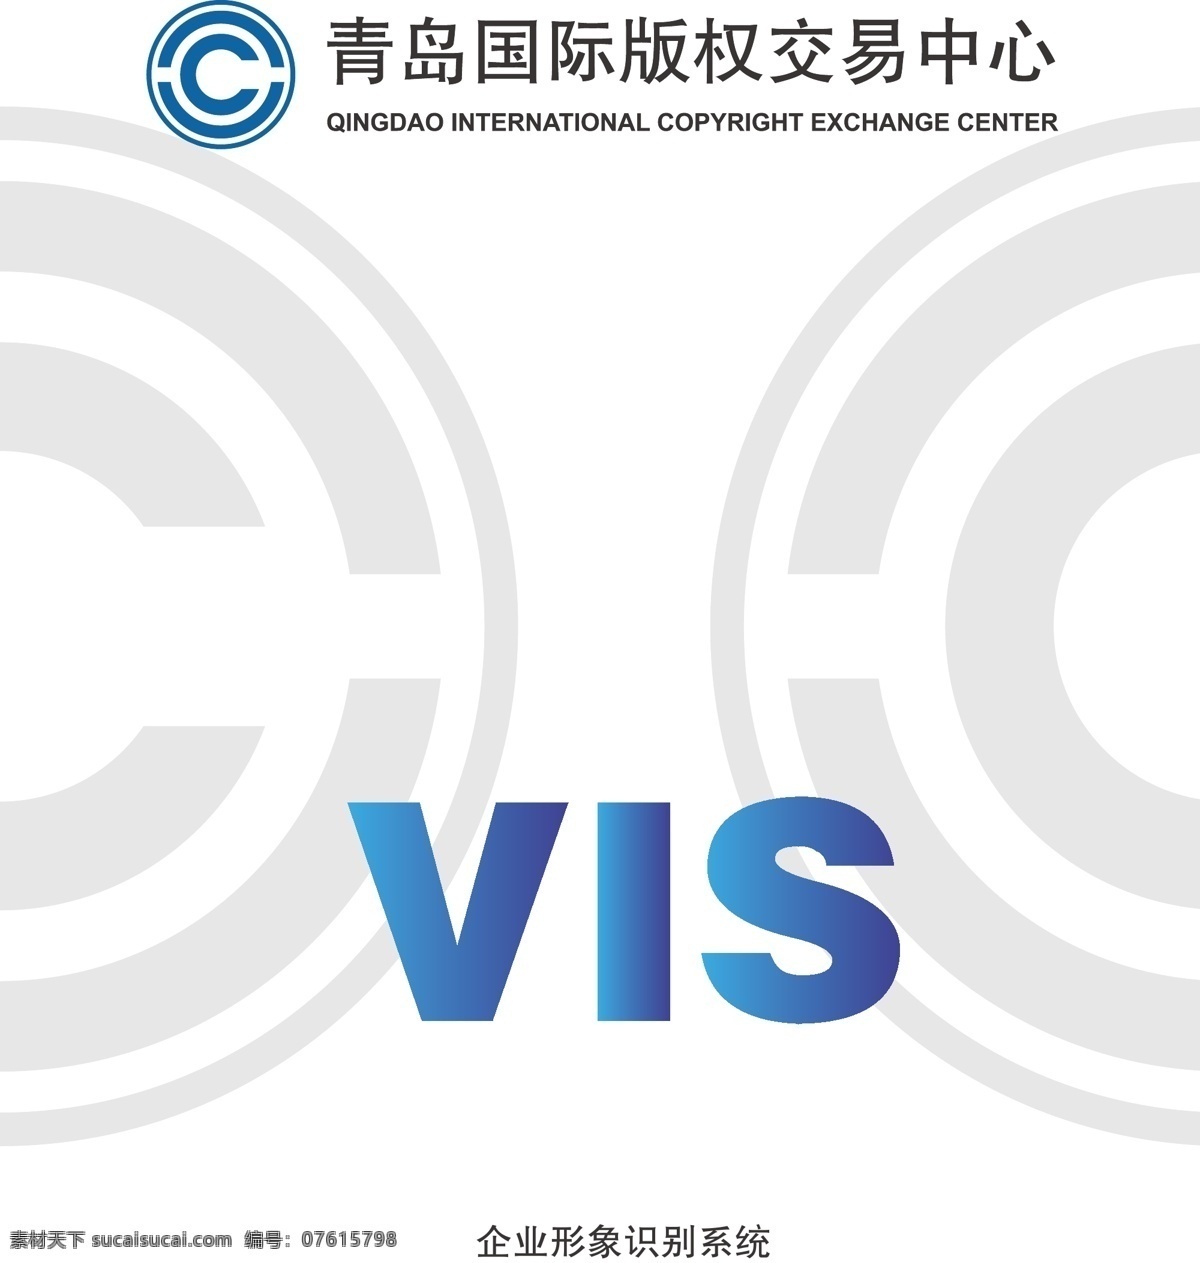 版权 交易中心 vi 手册 基础部分 应用部分 中英文释义 矢量 模版 vi设计